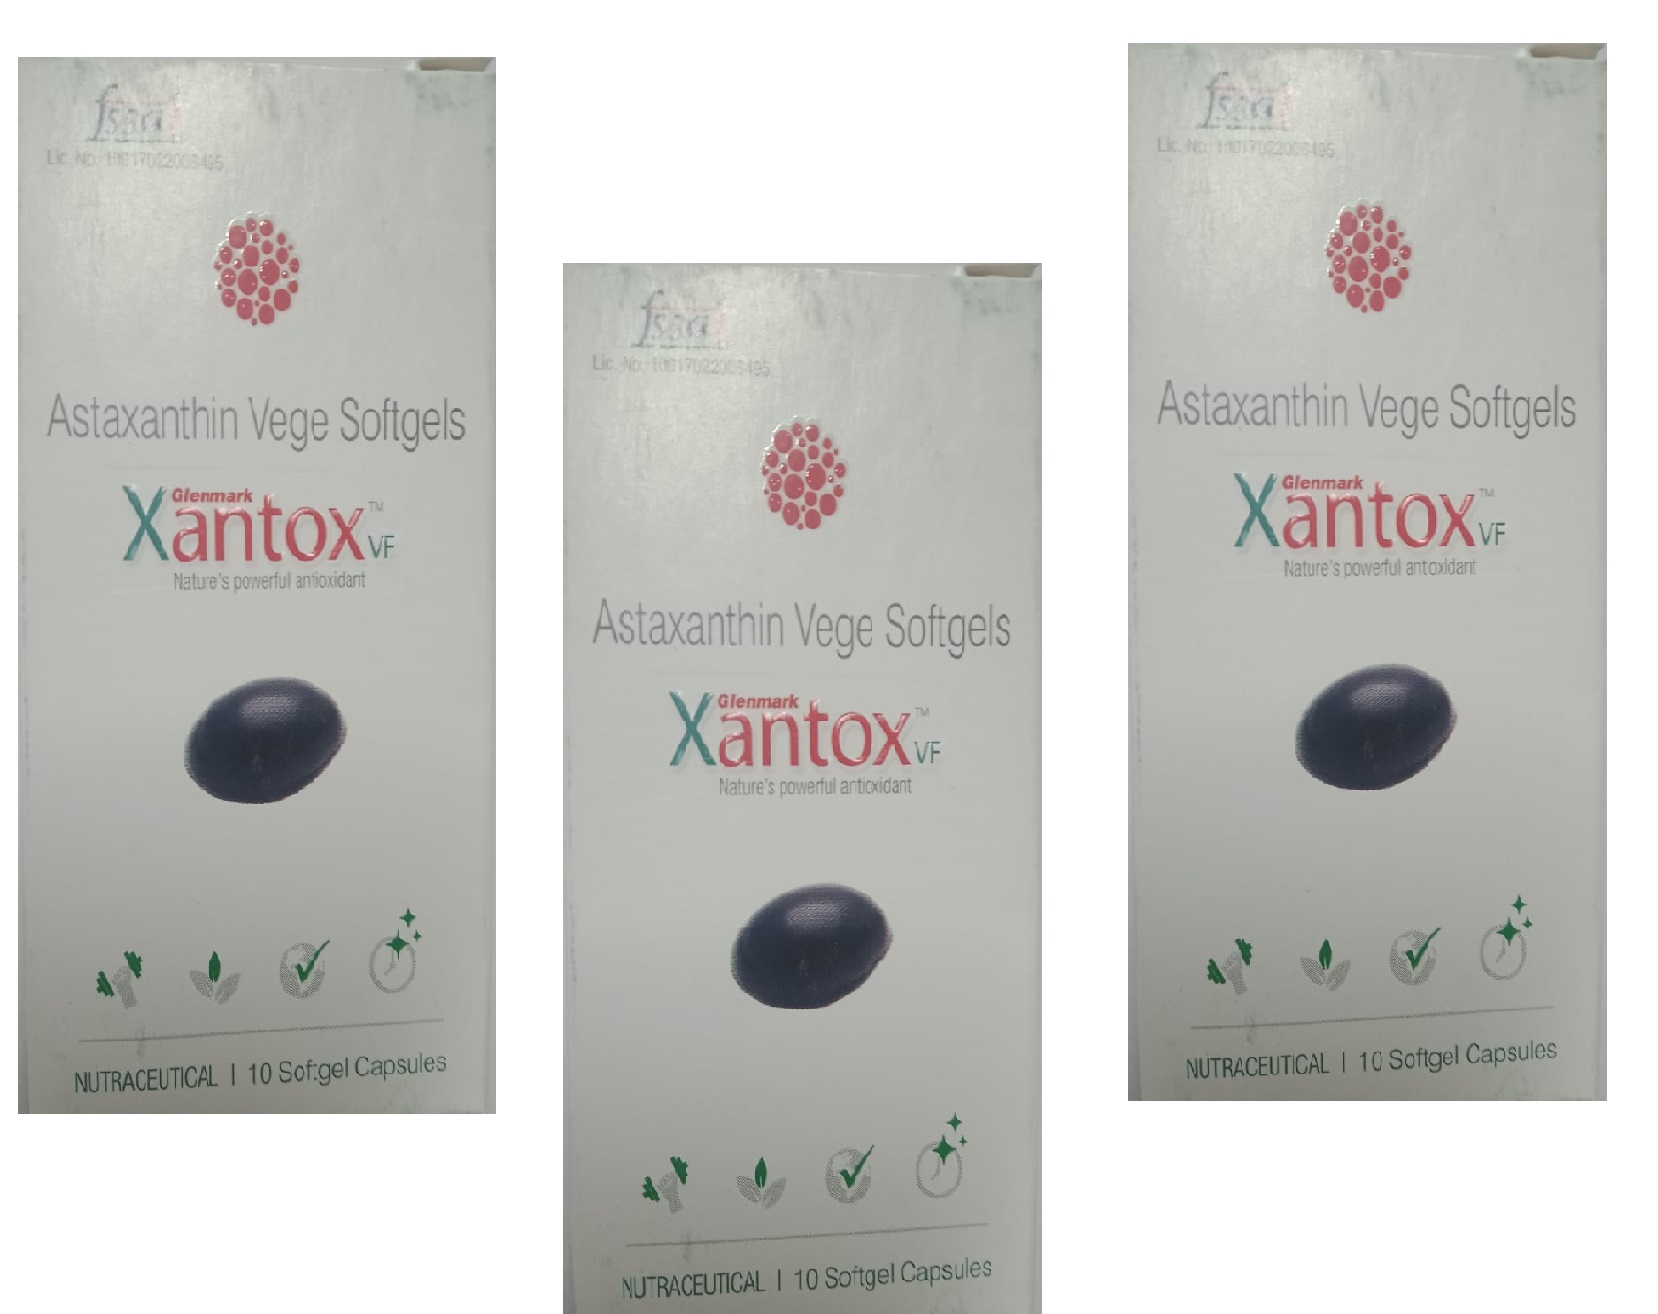 Glenmark Xantox VF Sunscreen Antioxident Supplement for Skin -30 Capsules